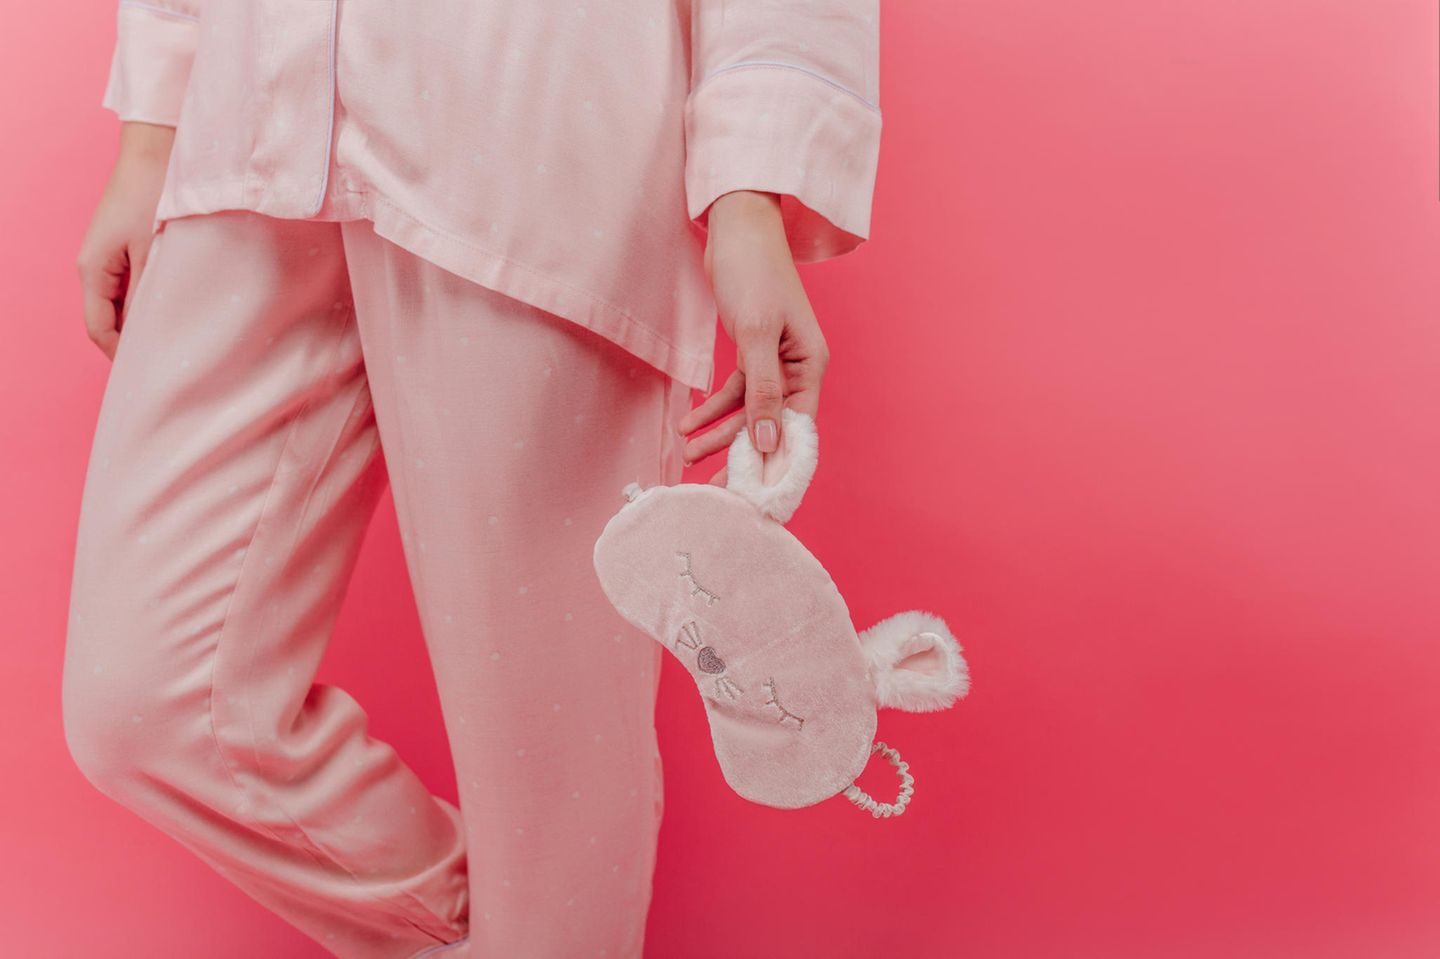 Rituale für den Schönheitsschlaf: Rosa Pyjama und Schlafmaske